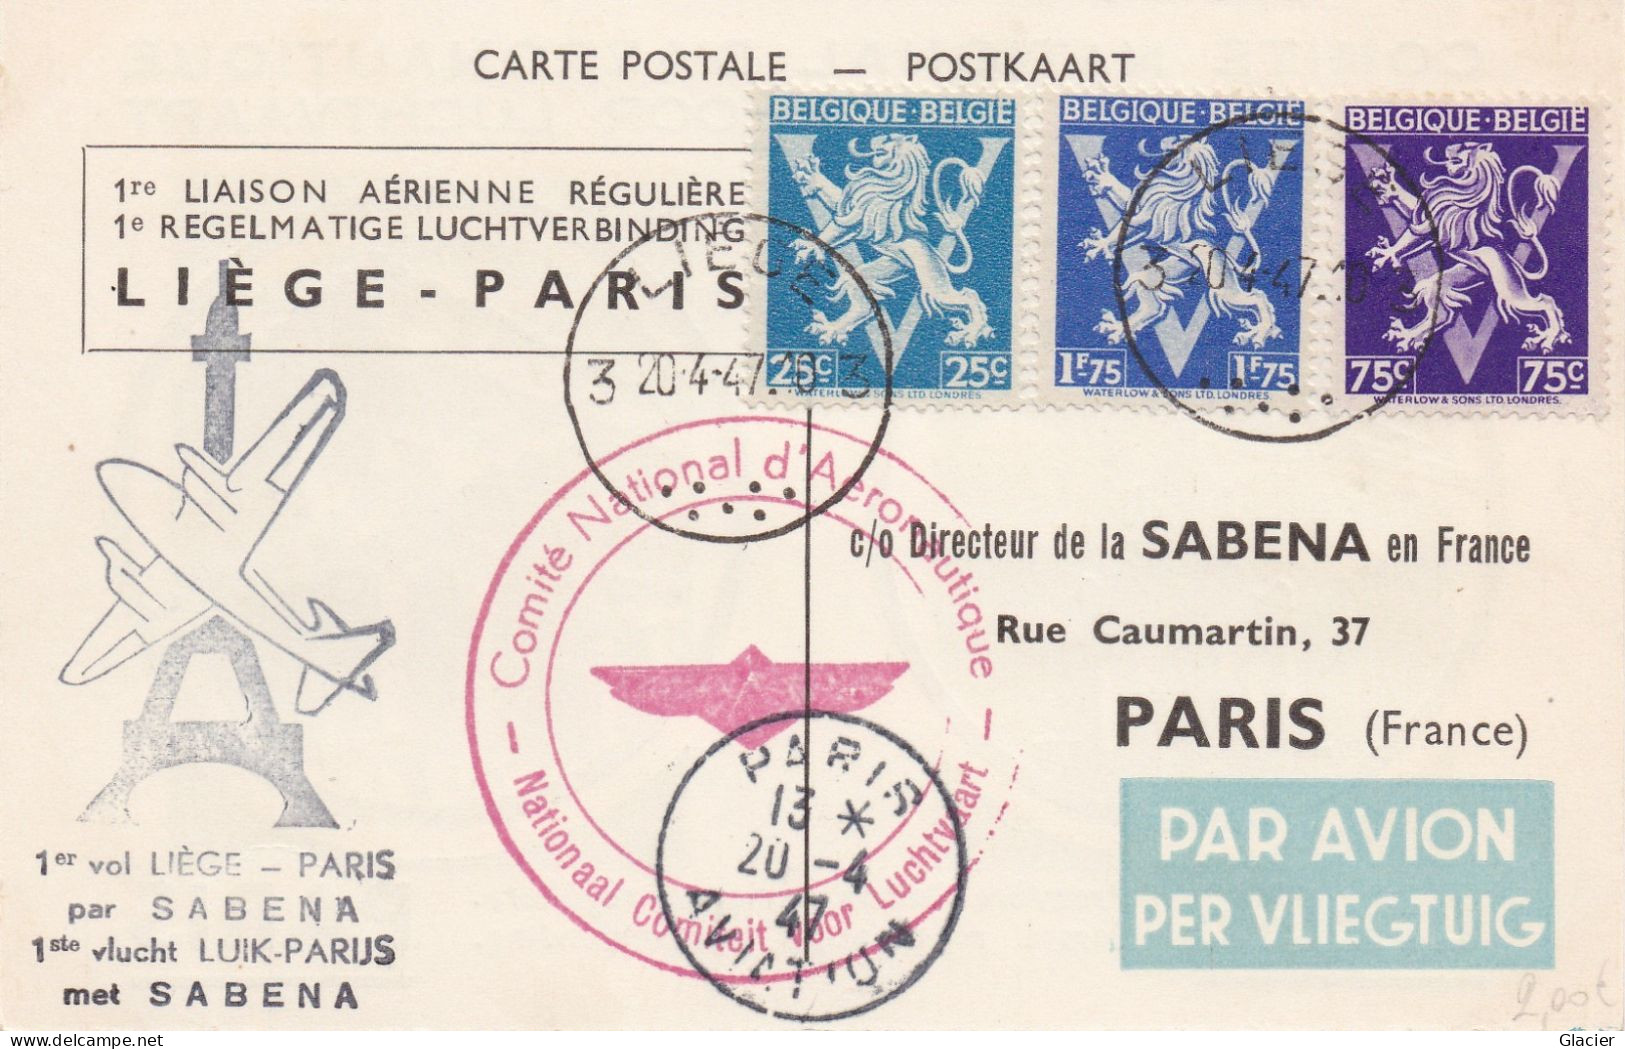 1er Vol LIEGE-PARIS Par Sabena Cachet Comité National D'Aéronautique 20-4-19 - Brieven En Documenten